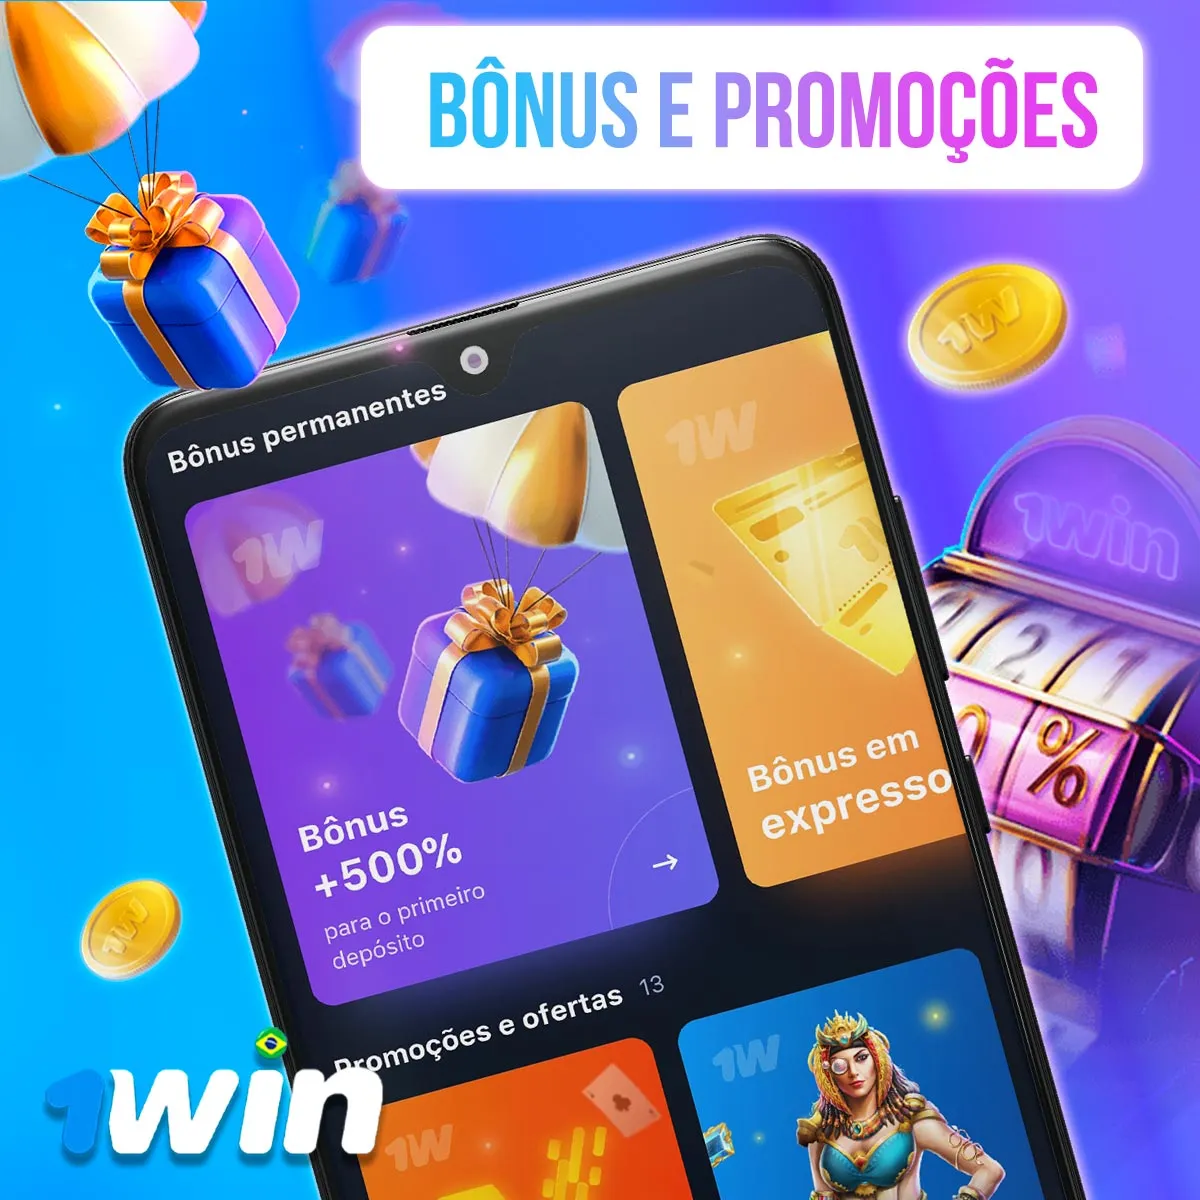 Programa de bônus e promoções da casa de apostas 1win no mercado brasileiro